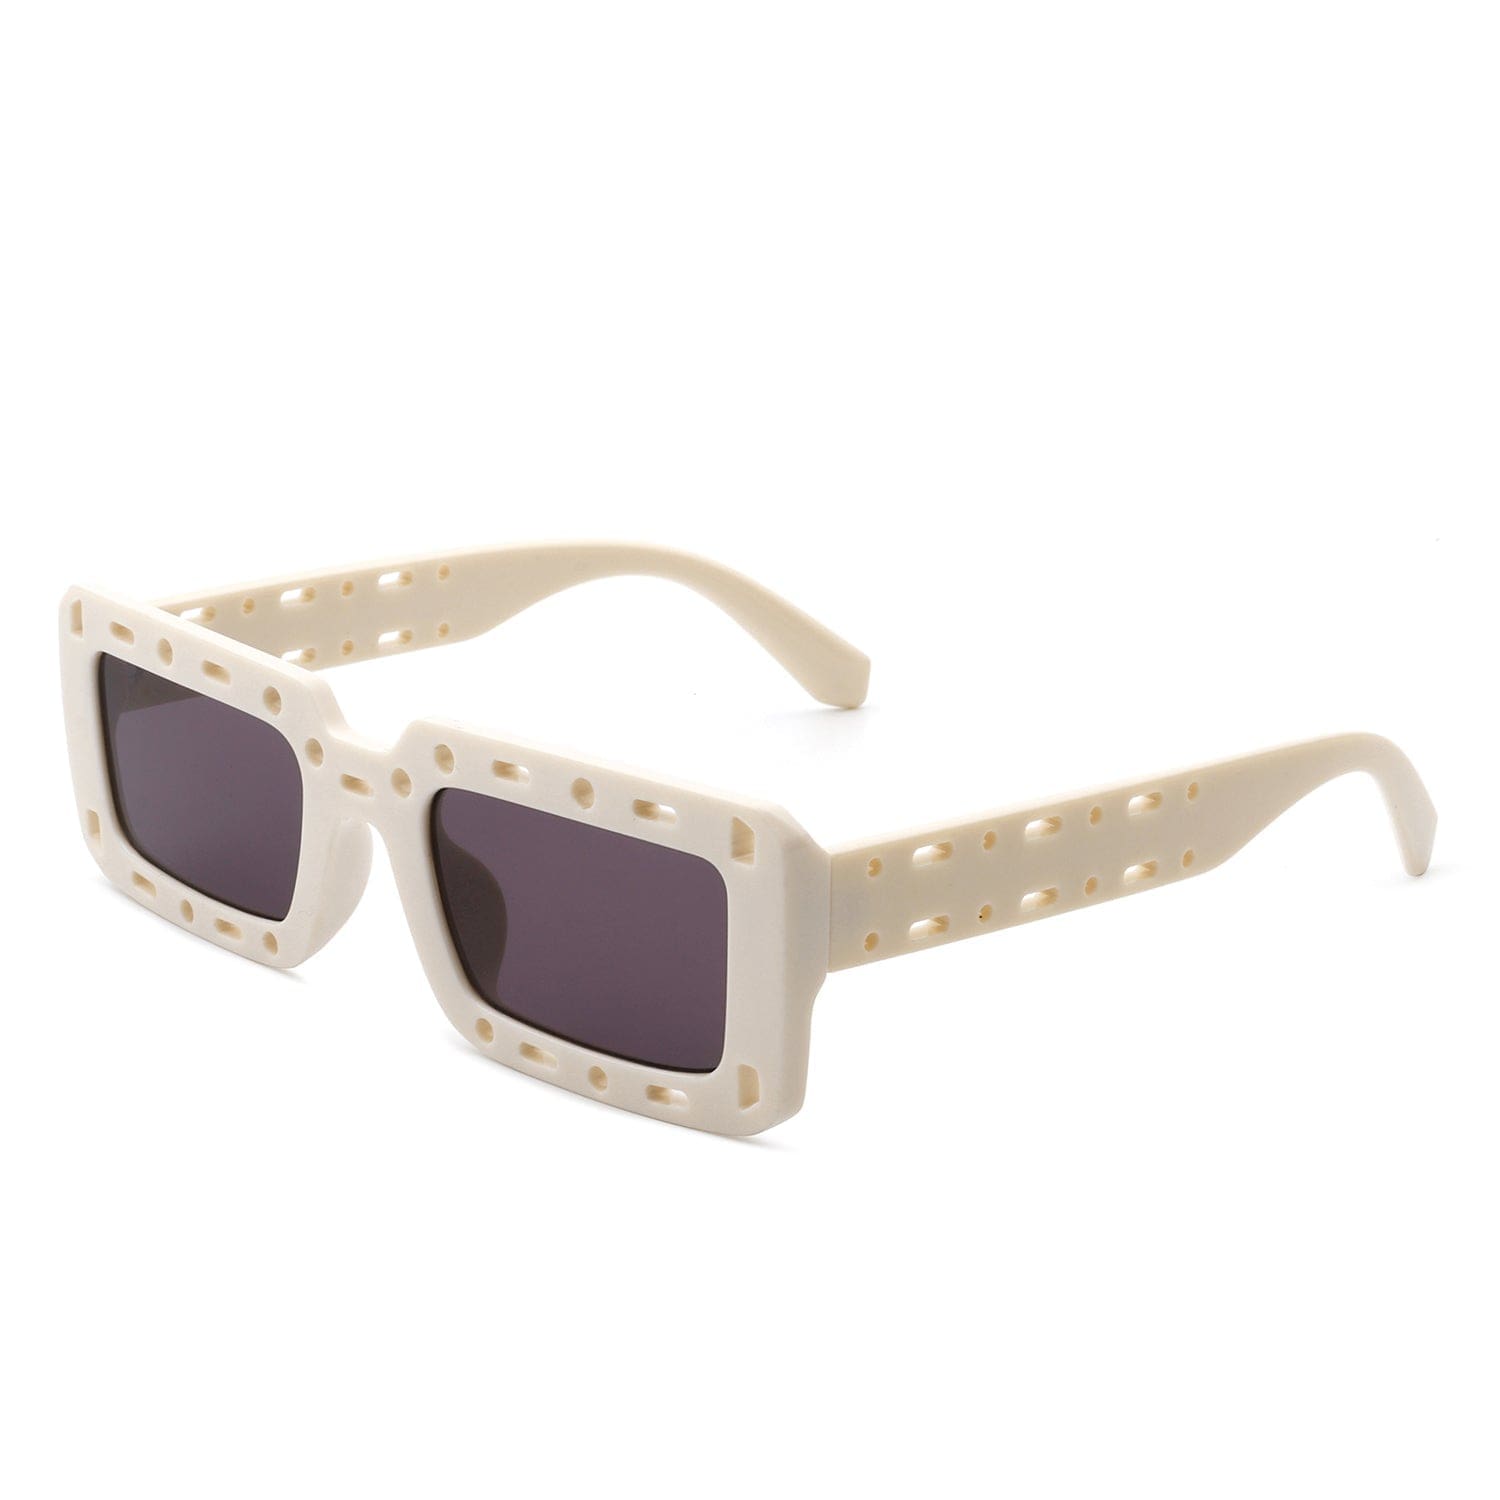 Undynite - Rectangle Irregular Frame Retro Square Sunglasses 7